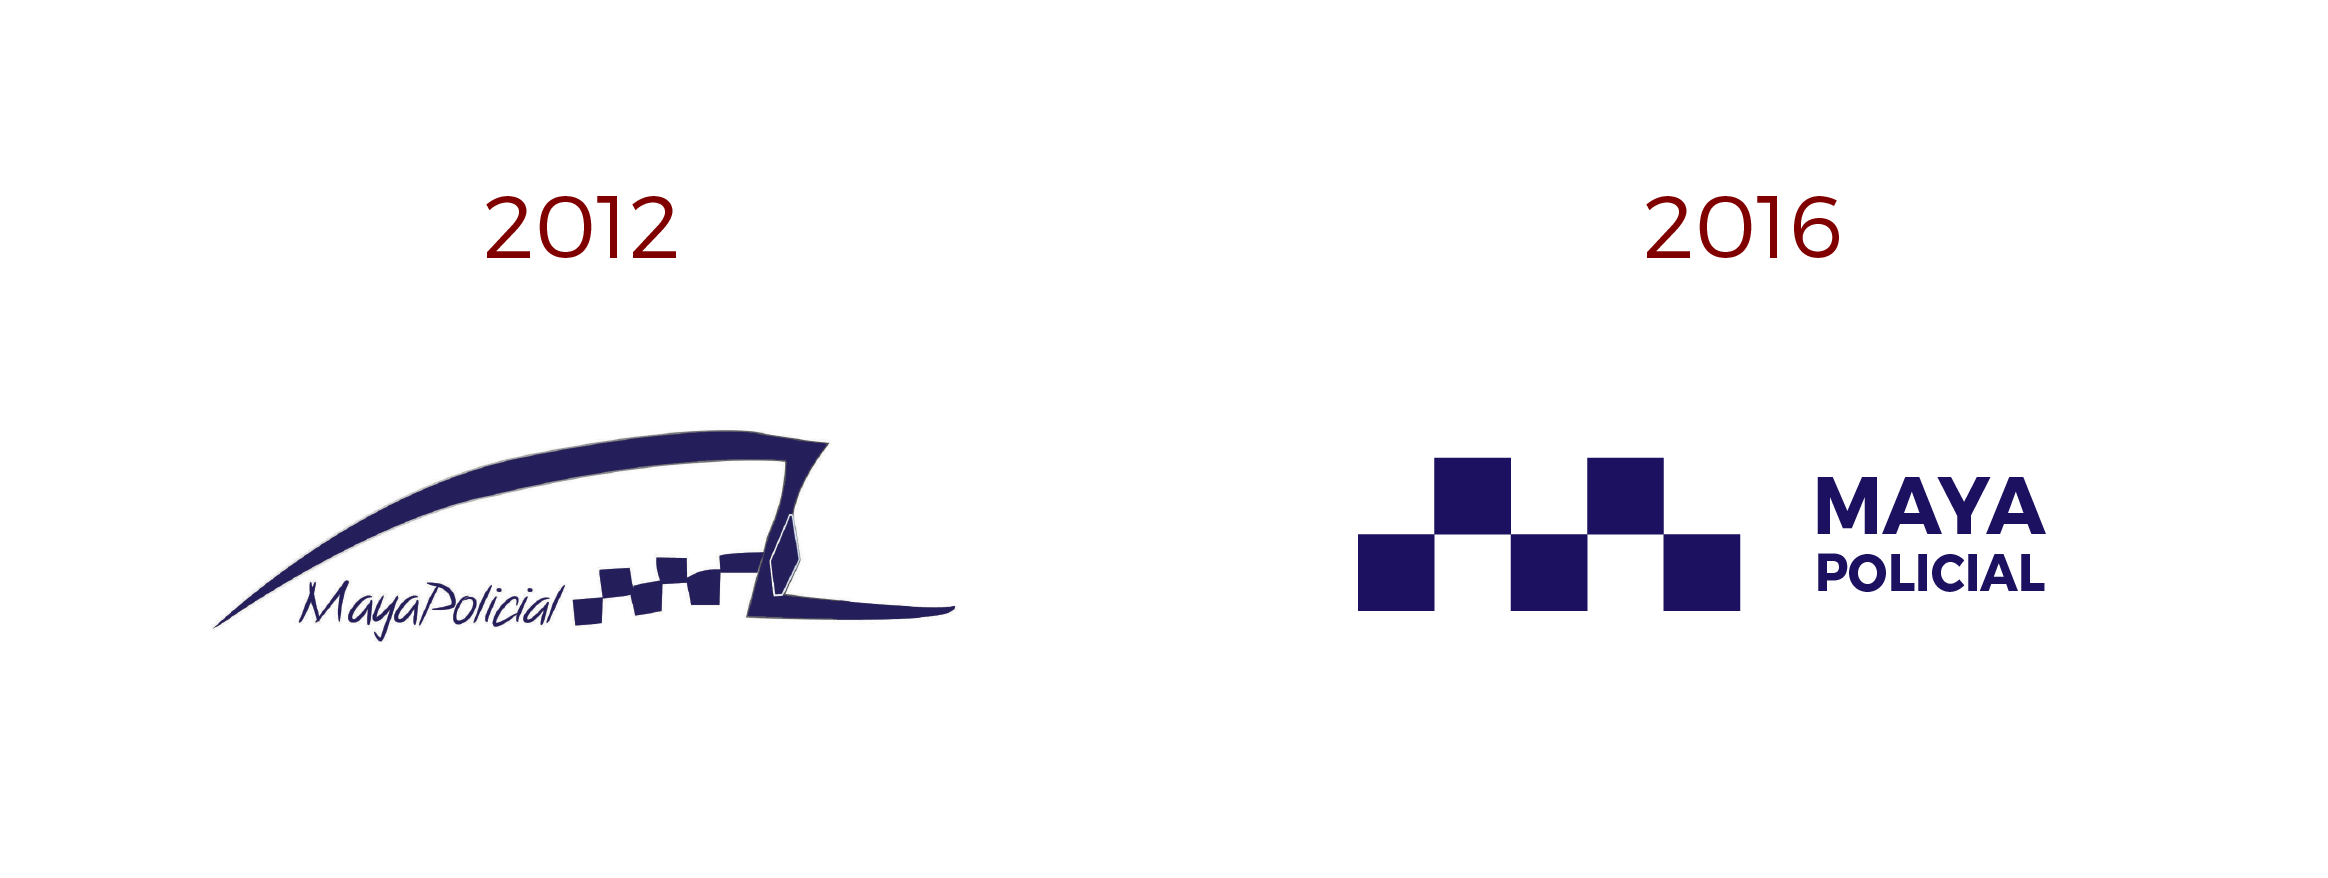 Maya Policial logotipo